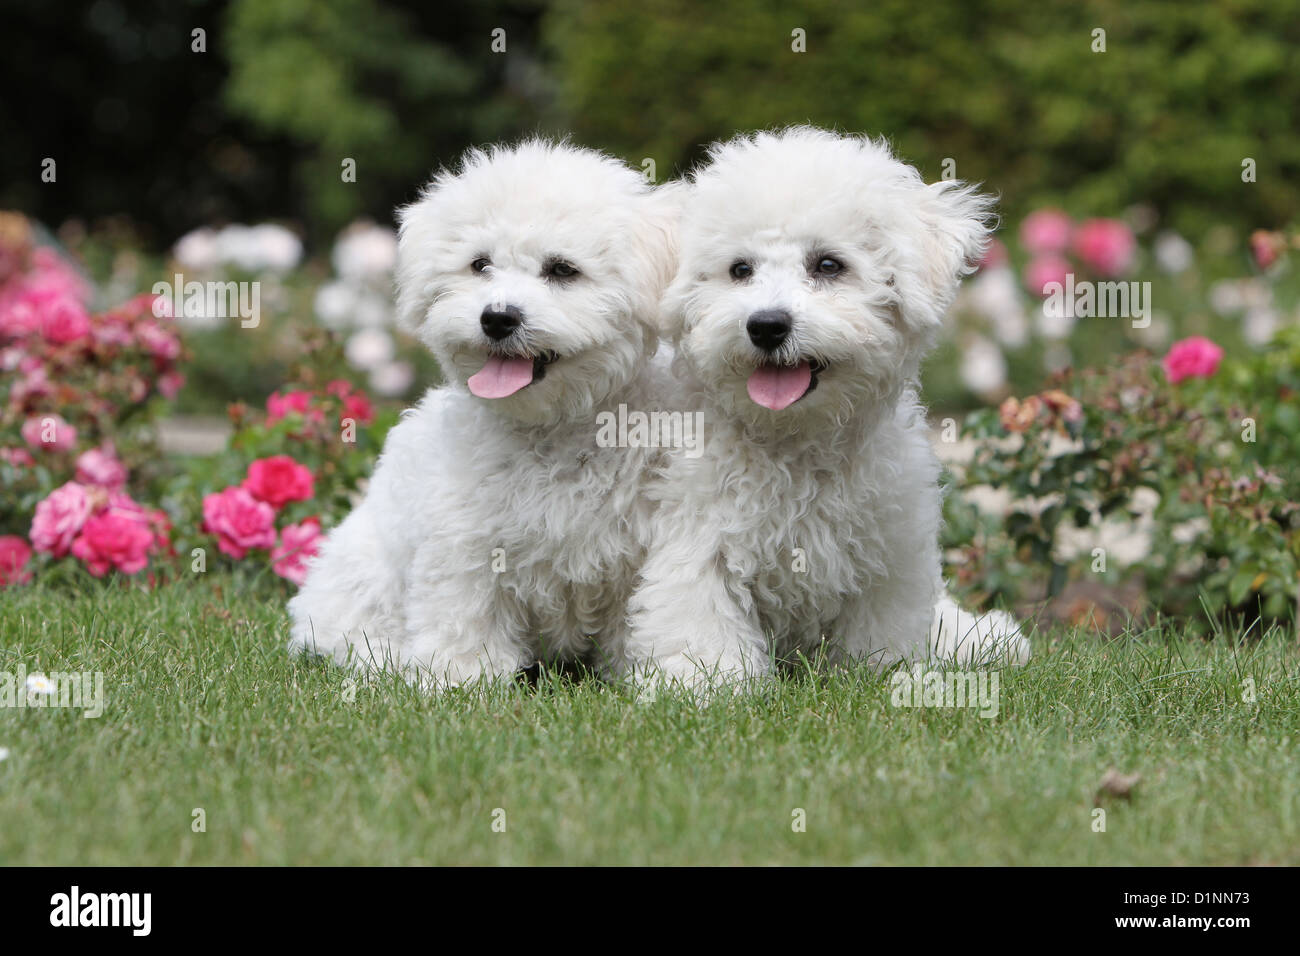 Hund Bichon Frise zwei Welpen sitzen auf Rasen Stockfotografie - Alamy